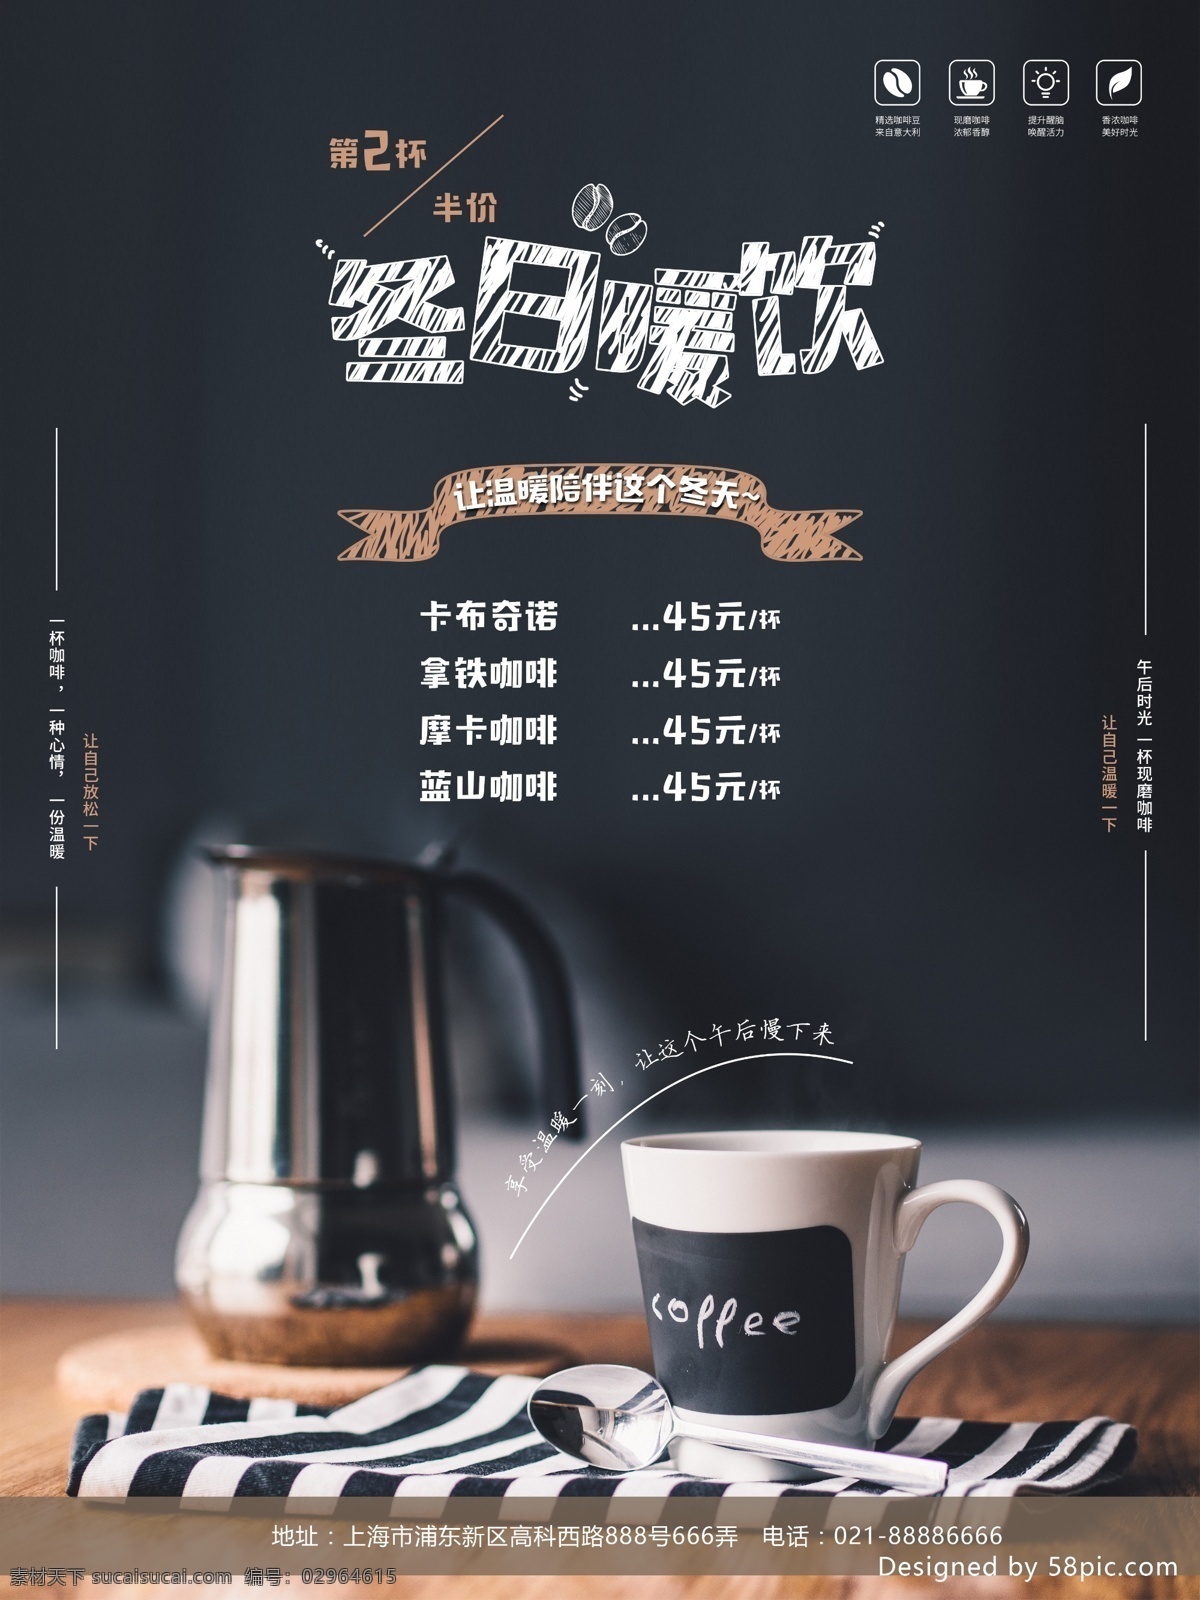 黑色 冬日 热饮 咖啡 海报 饮料 咖啡店 咖啡豆 价格海报 展板 咖啡素材 咖啡杯